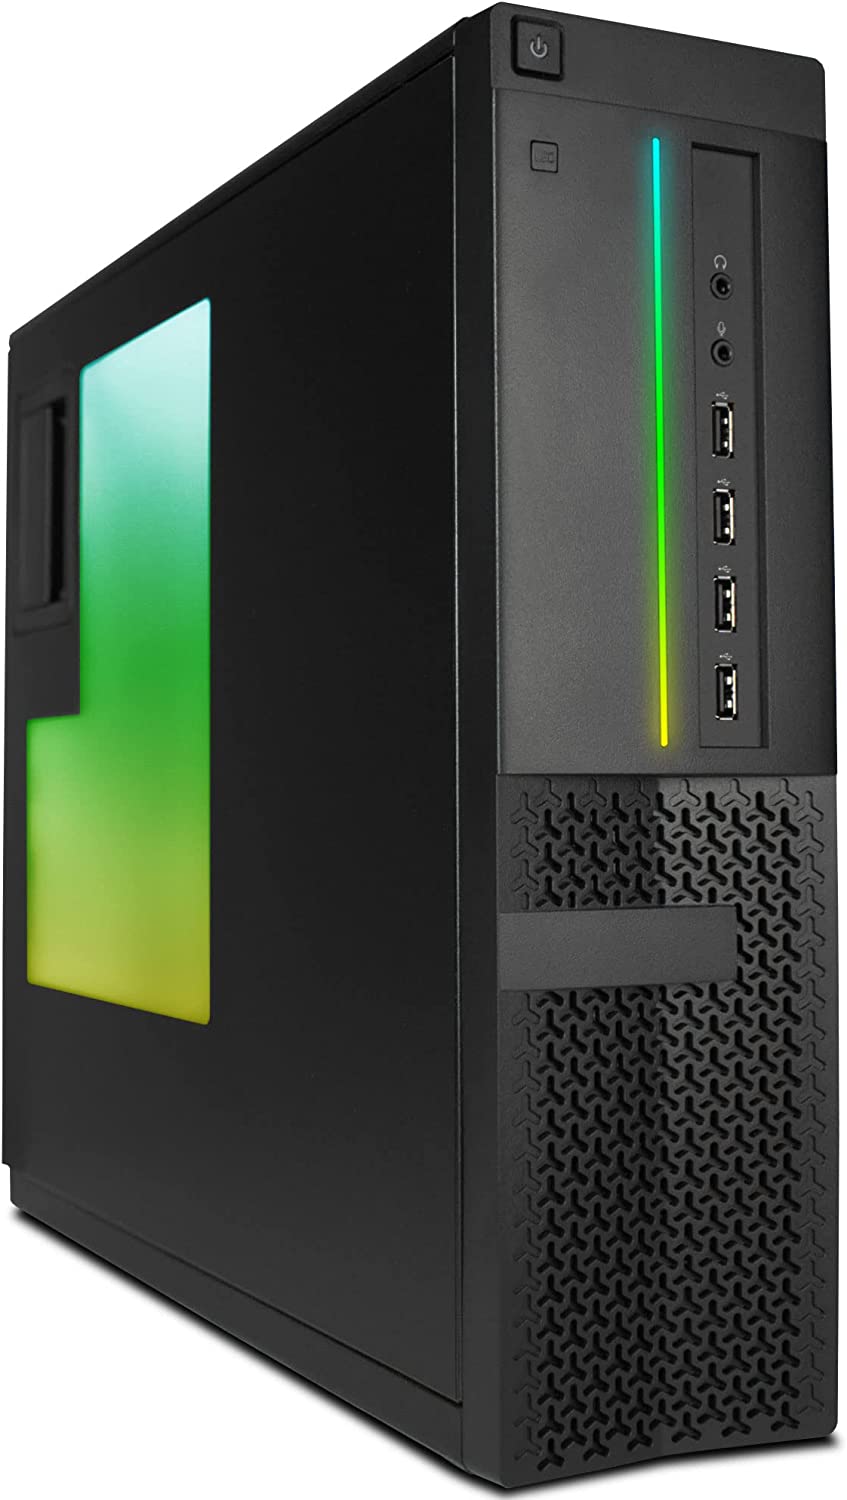 Dell Desktop Computer PC w/RGB Lighting | Intel Quad-Core i5 | 8GB DDR3 RAM, 500GB SSD + 1TB HDD Windows 10 (Renewed)